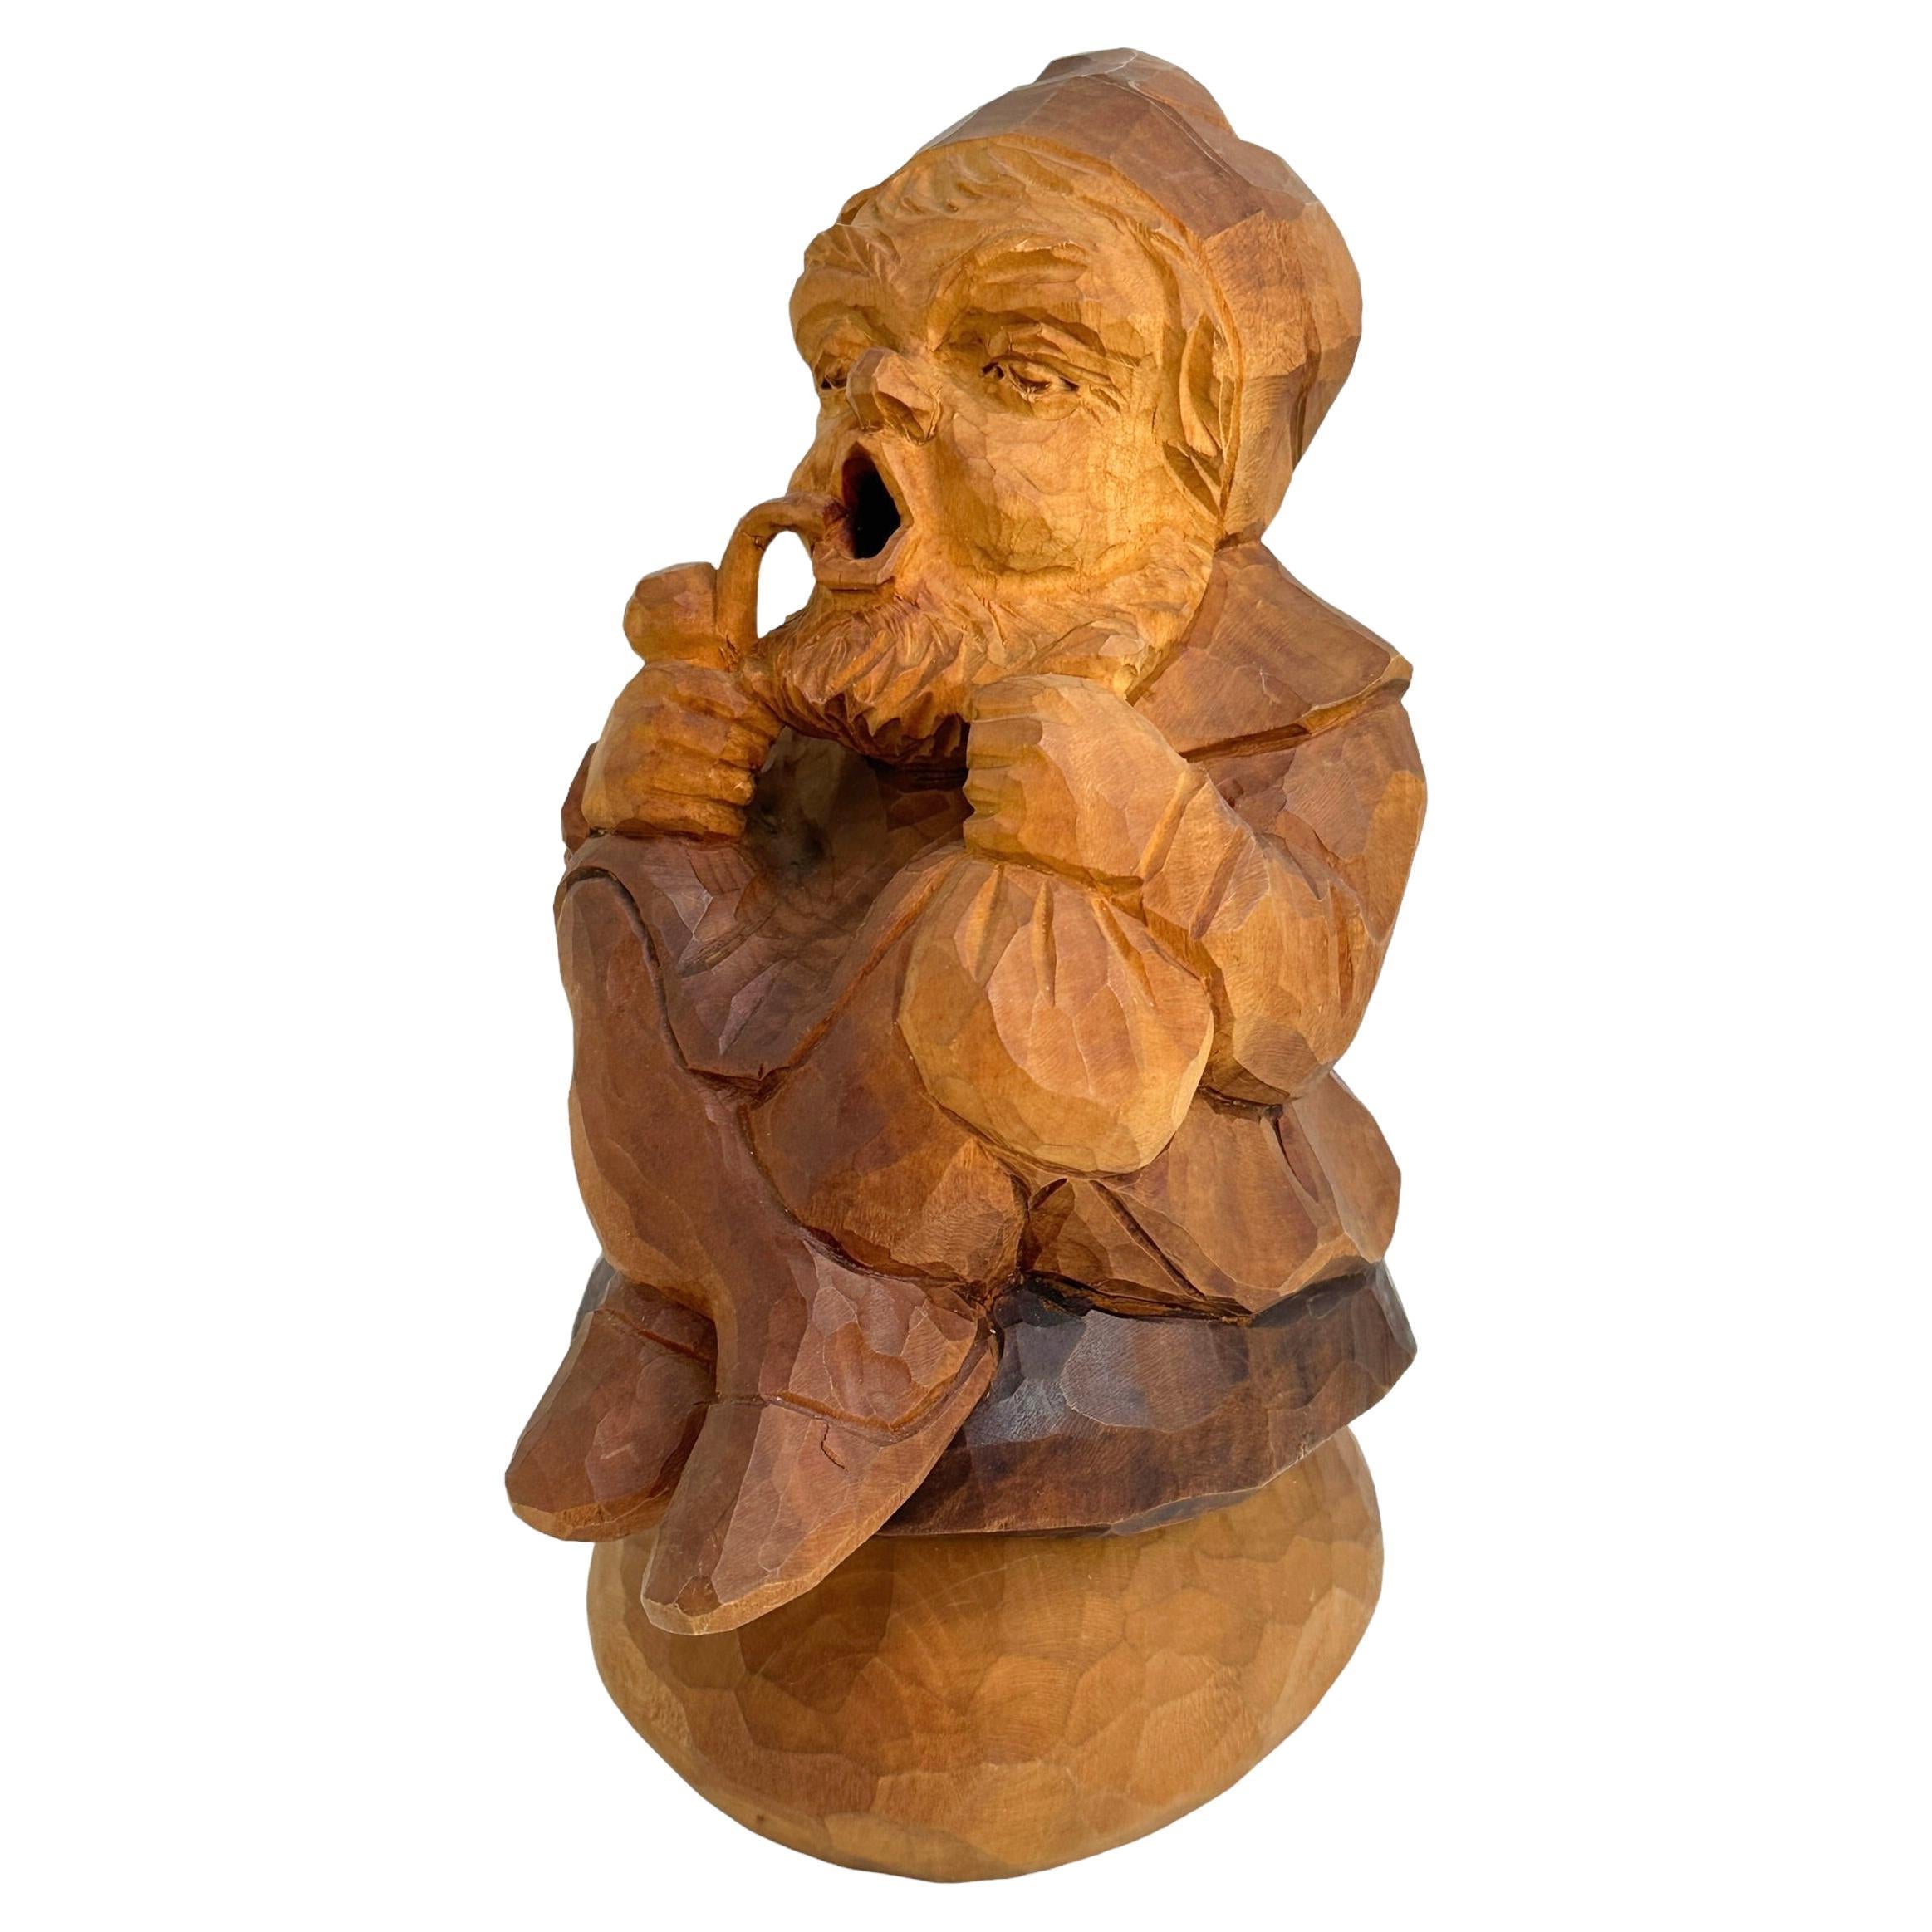 Hand Carved Wooden Smoker Gnome Figure, Vintage German Black Forest Folk Art 